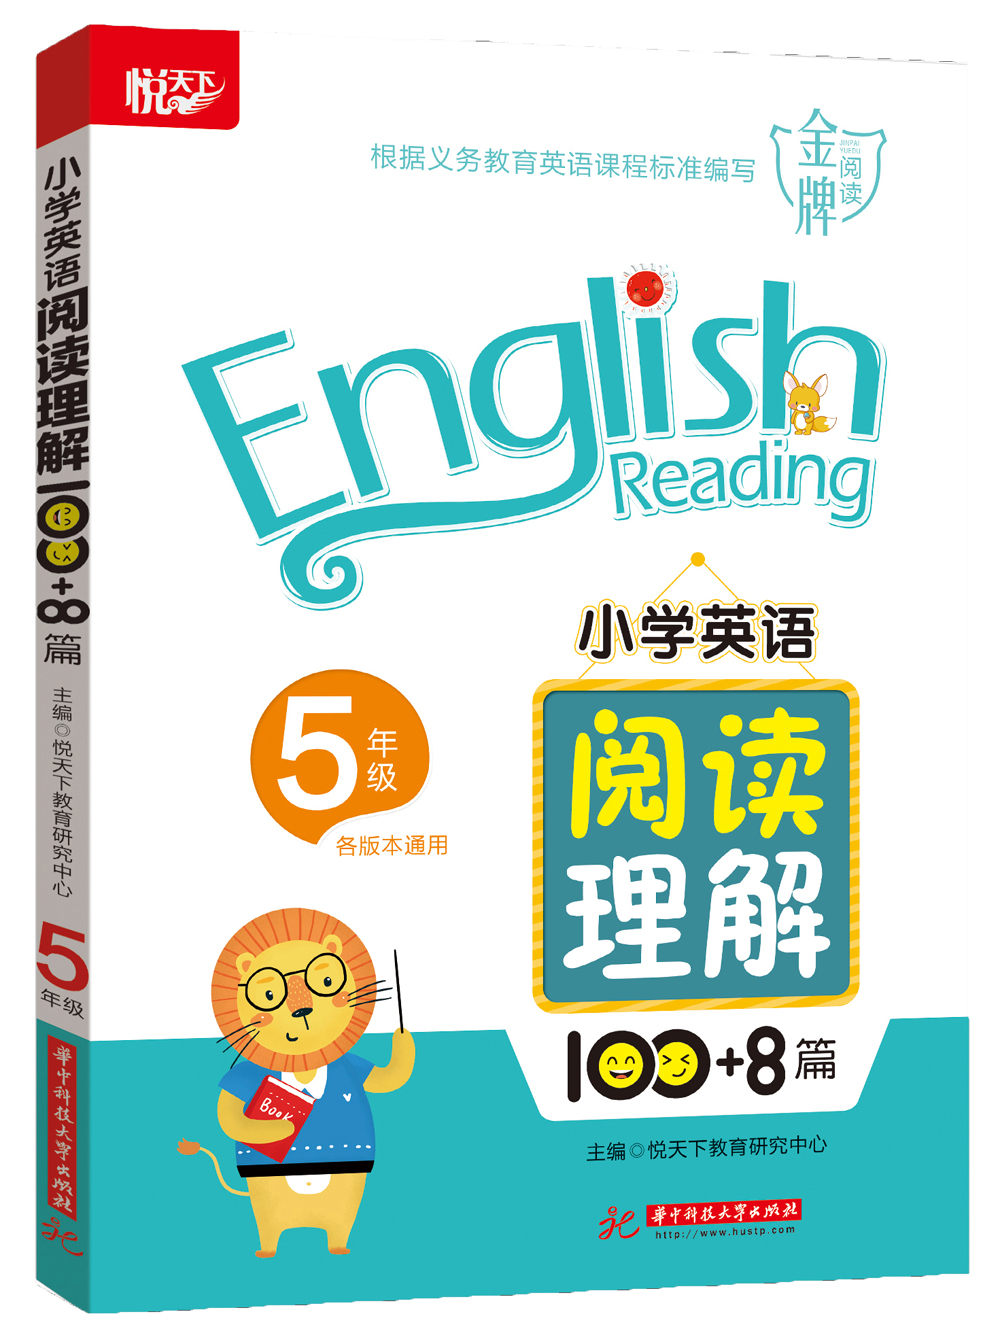 【新华书店】小学英语阅读理解100+8篇 5年级截图